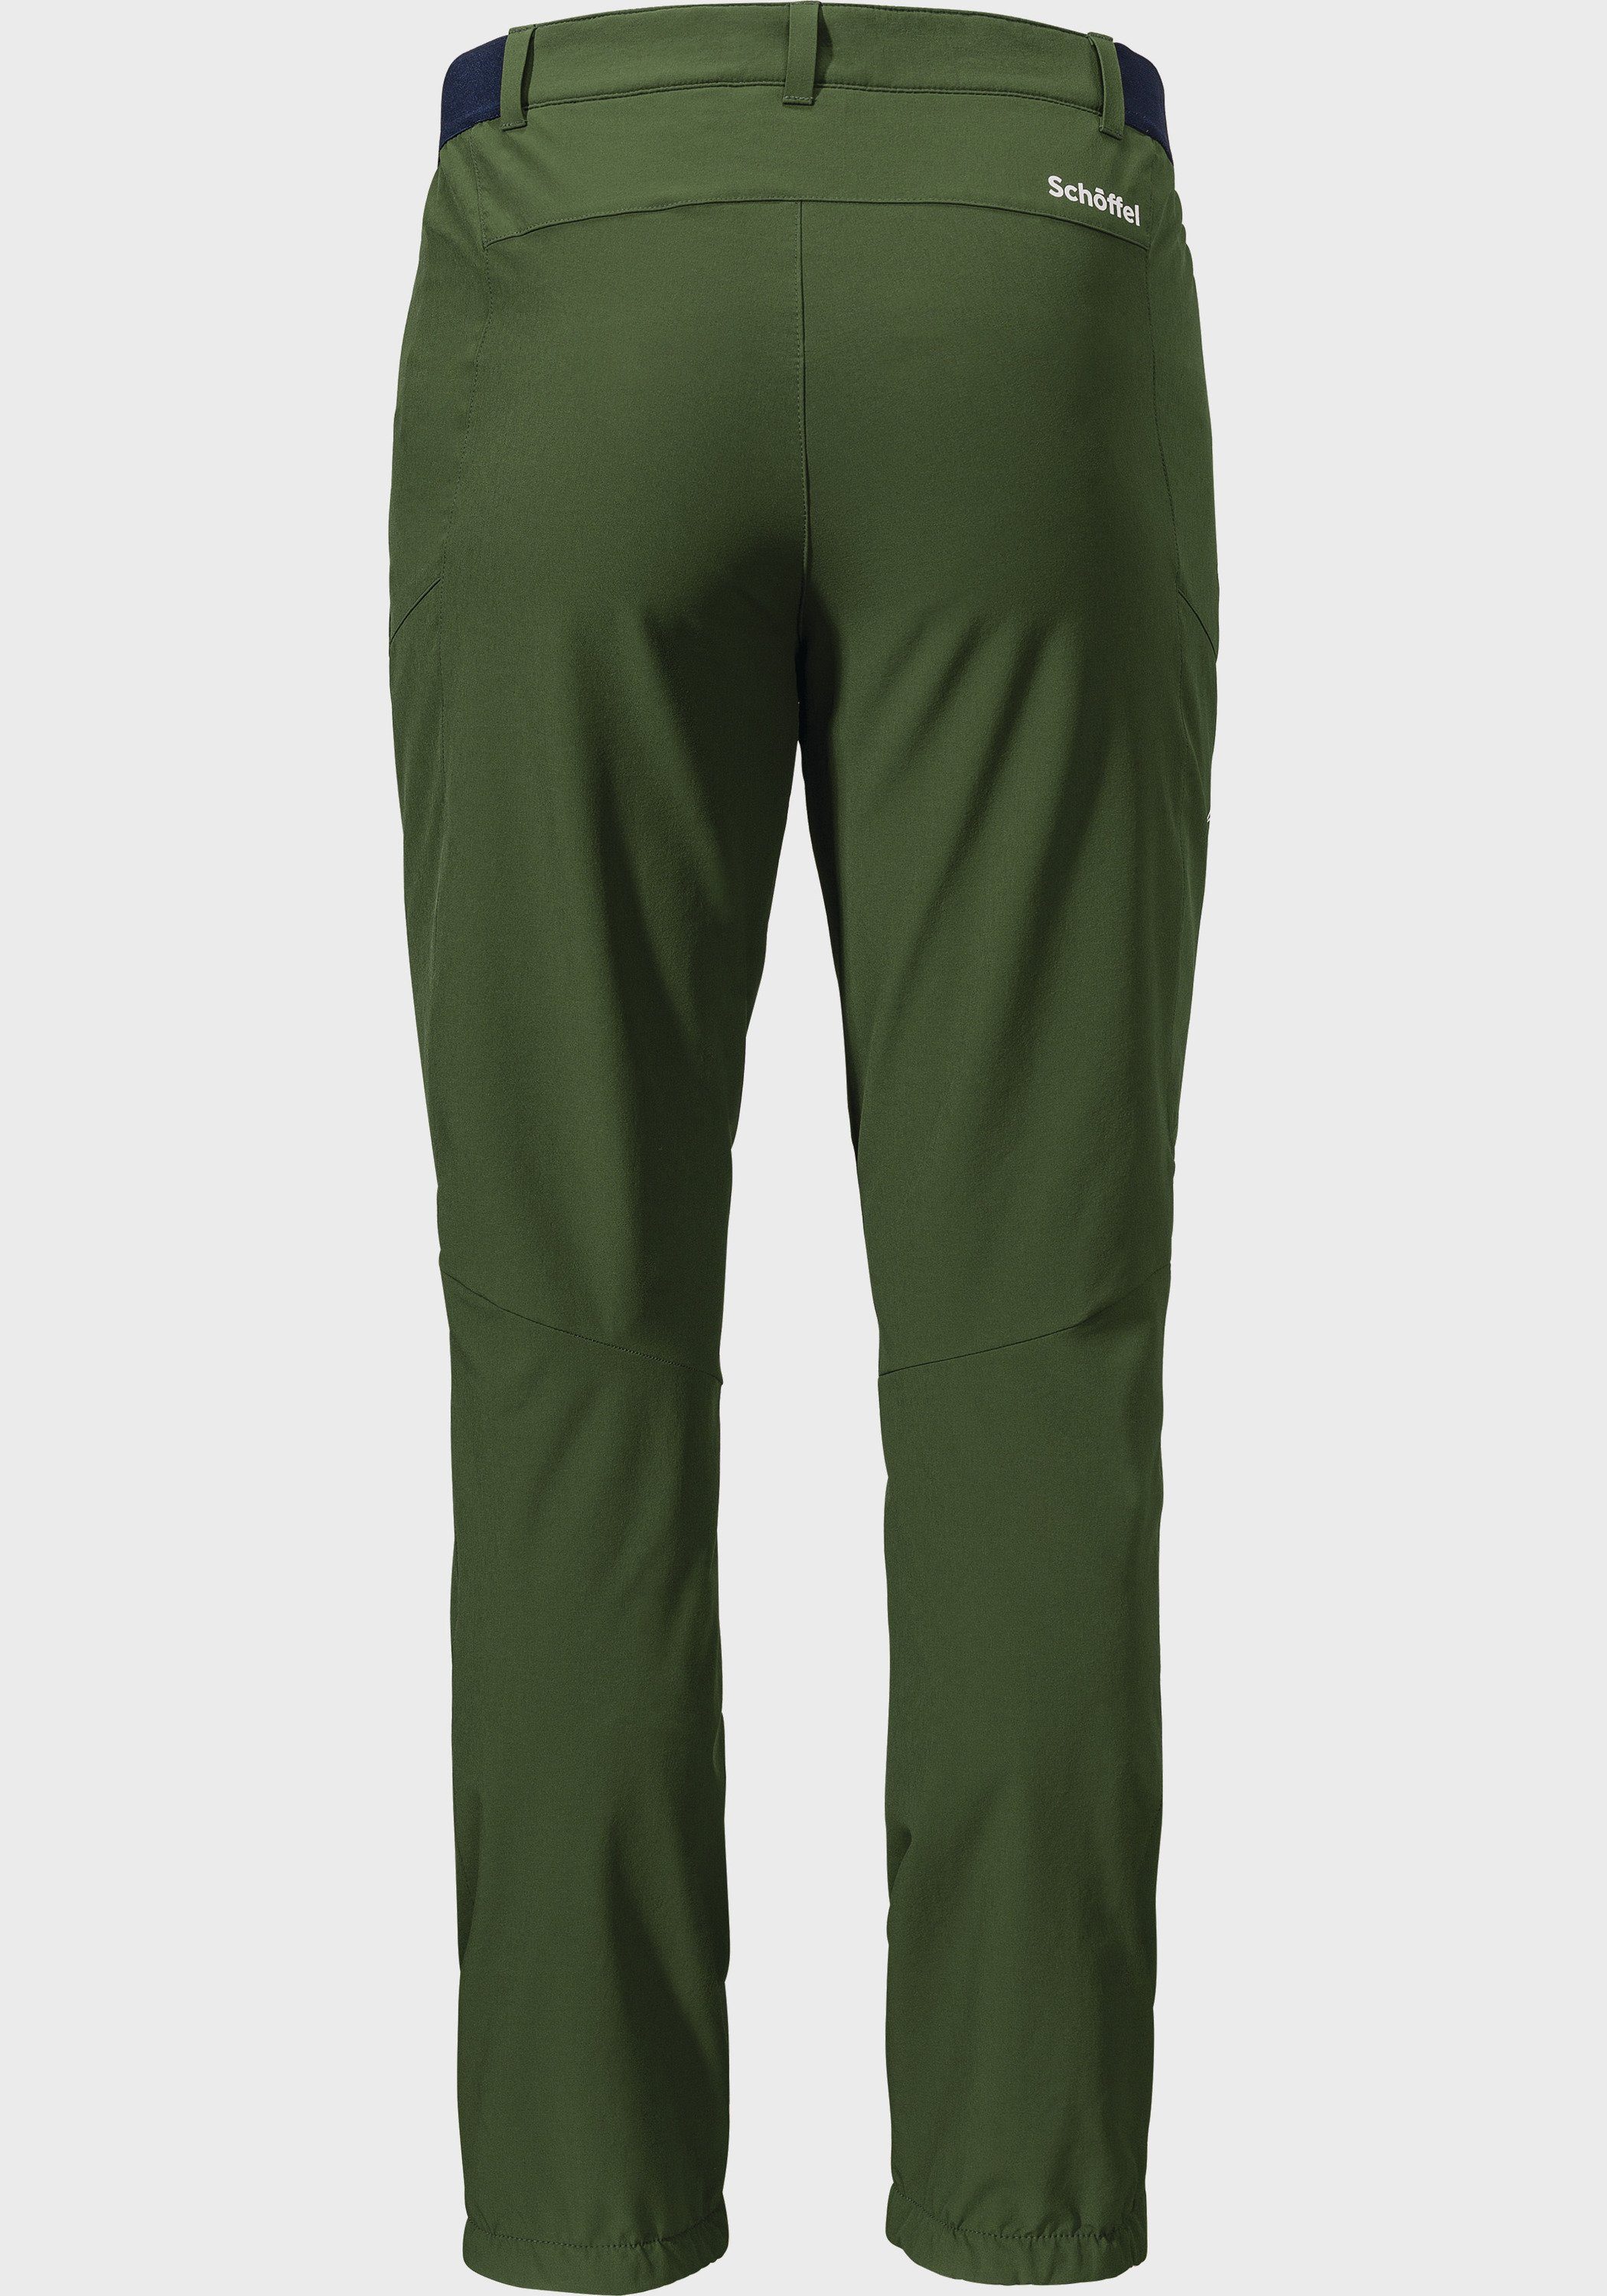 Schöffel M Hochfilzen grün Outdoorhose Pants